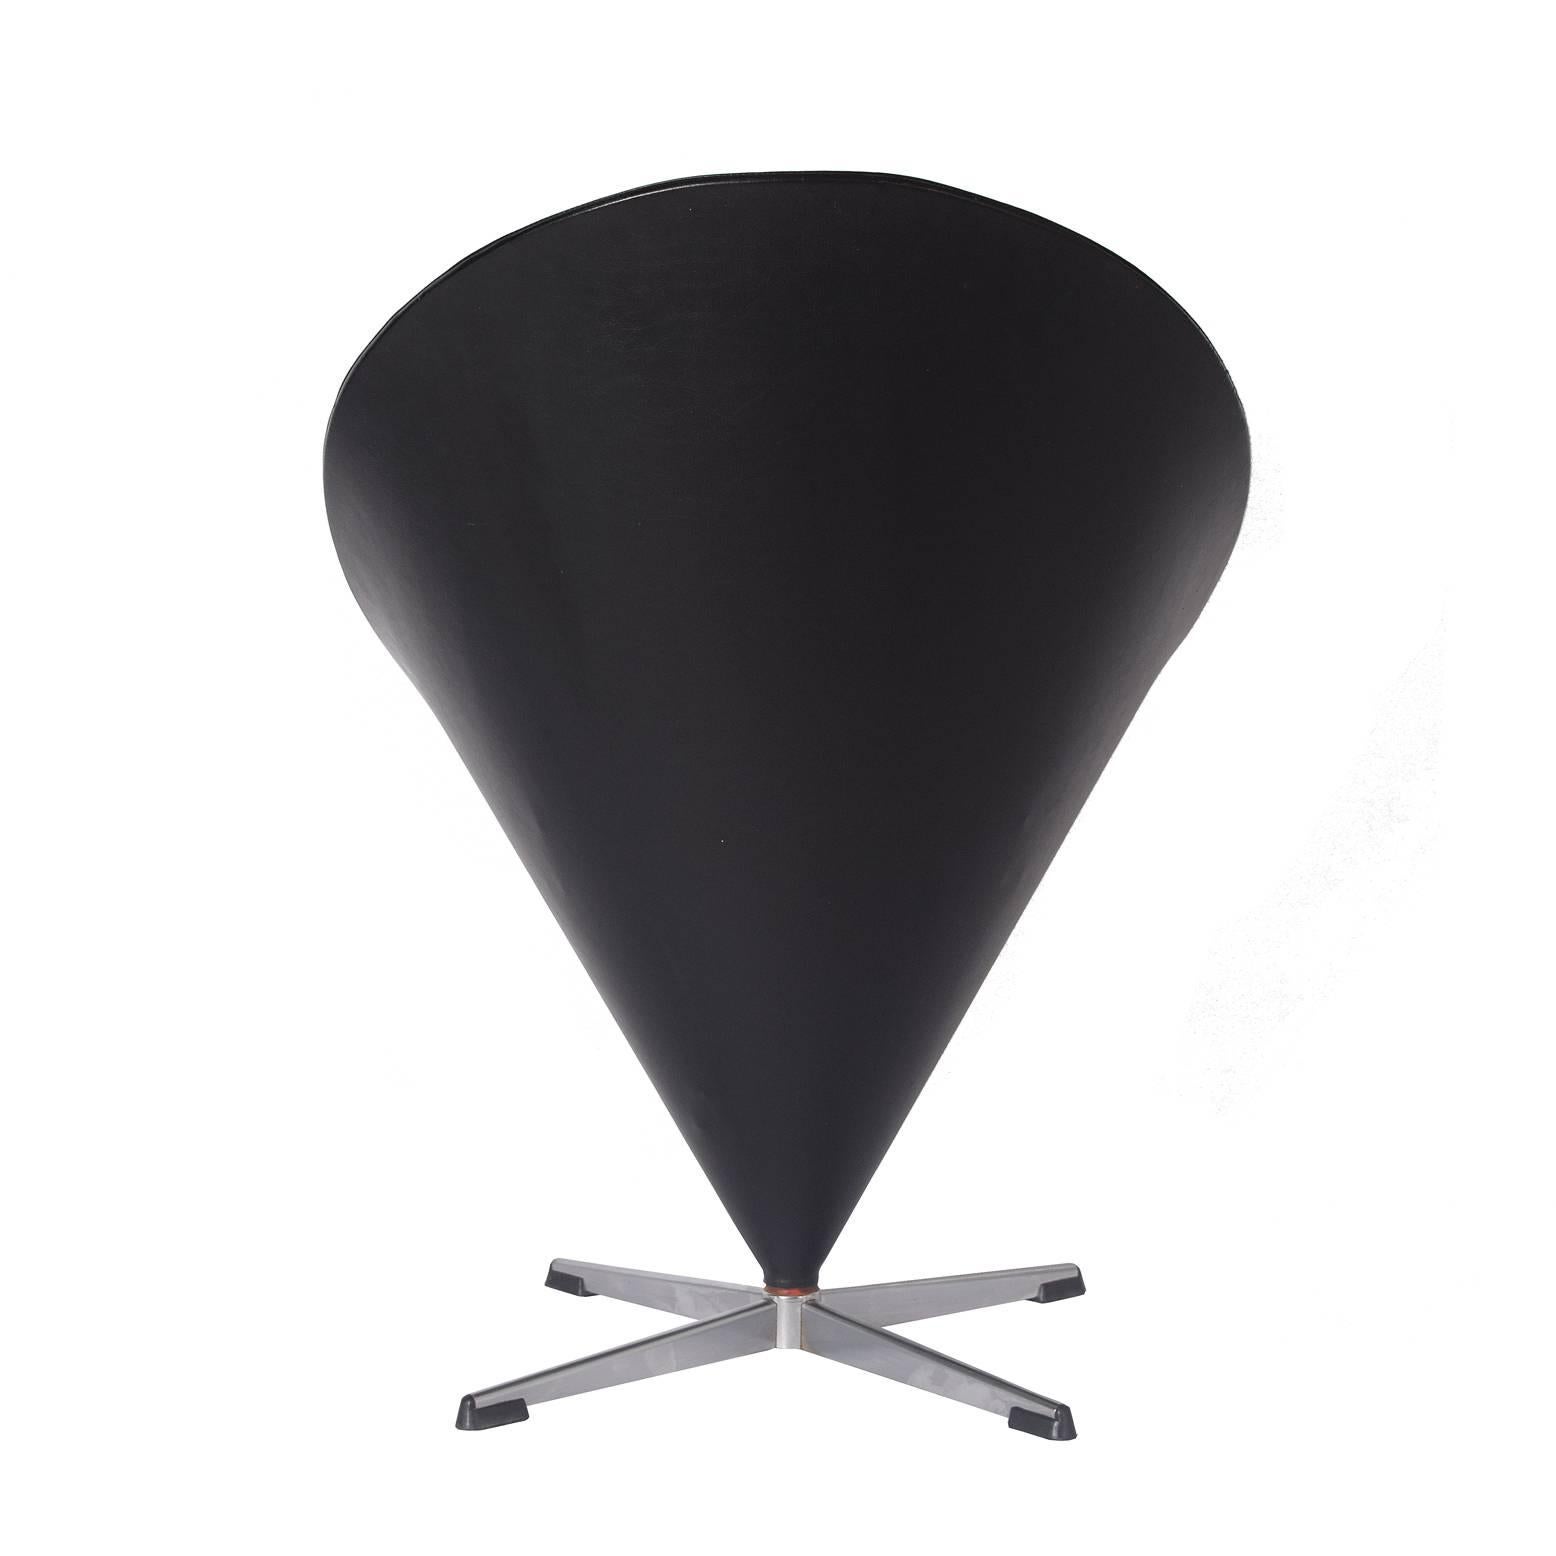 Condition originale, chaise iconique pivotante en forme de cône avec quatre pieds en acier et patins noirs. Fabriqué par Fritz Hansen. Revêtement en vinyle d'origine.